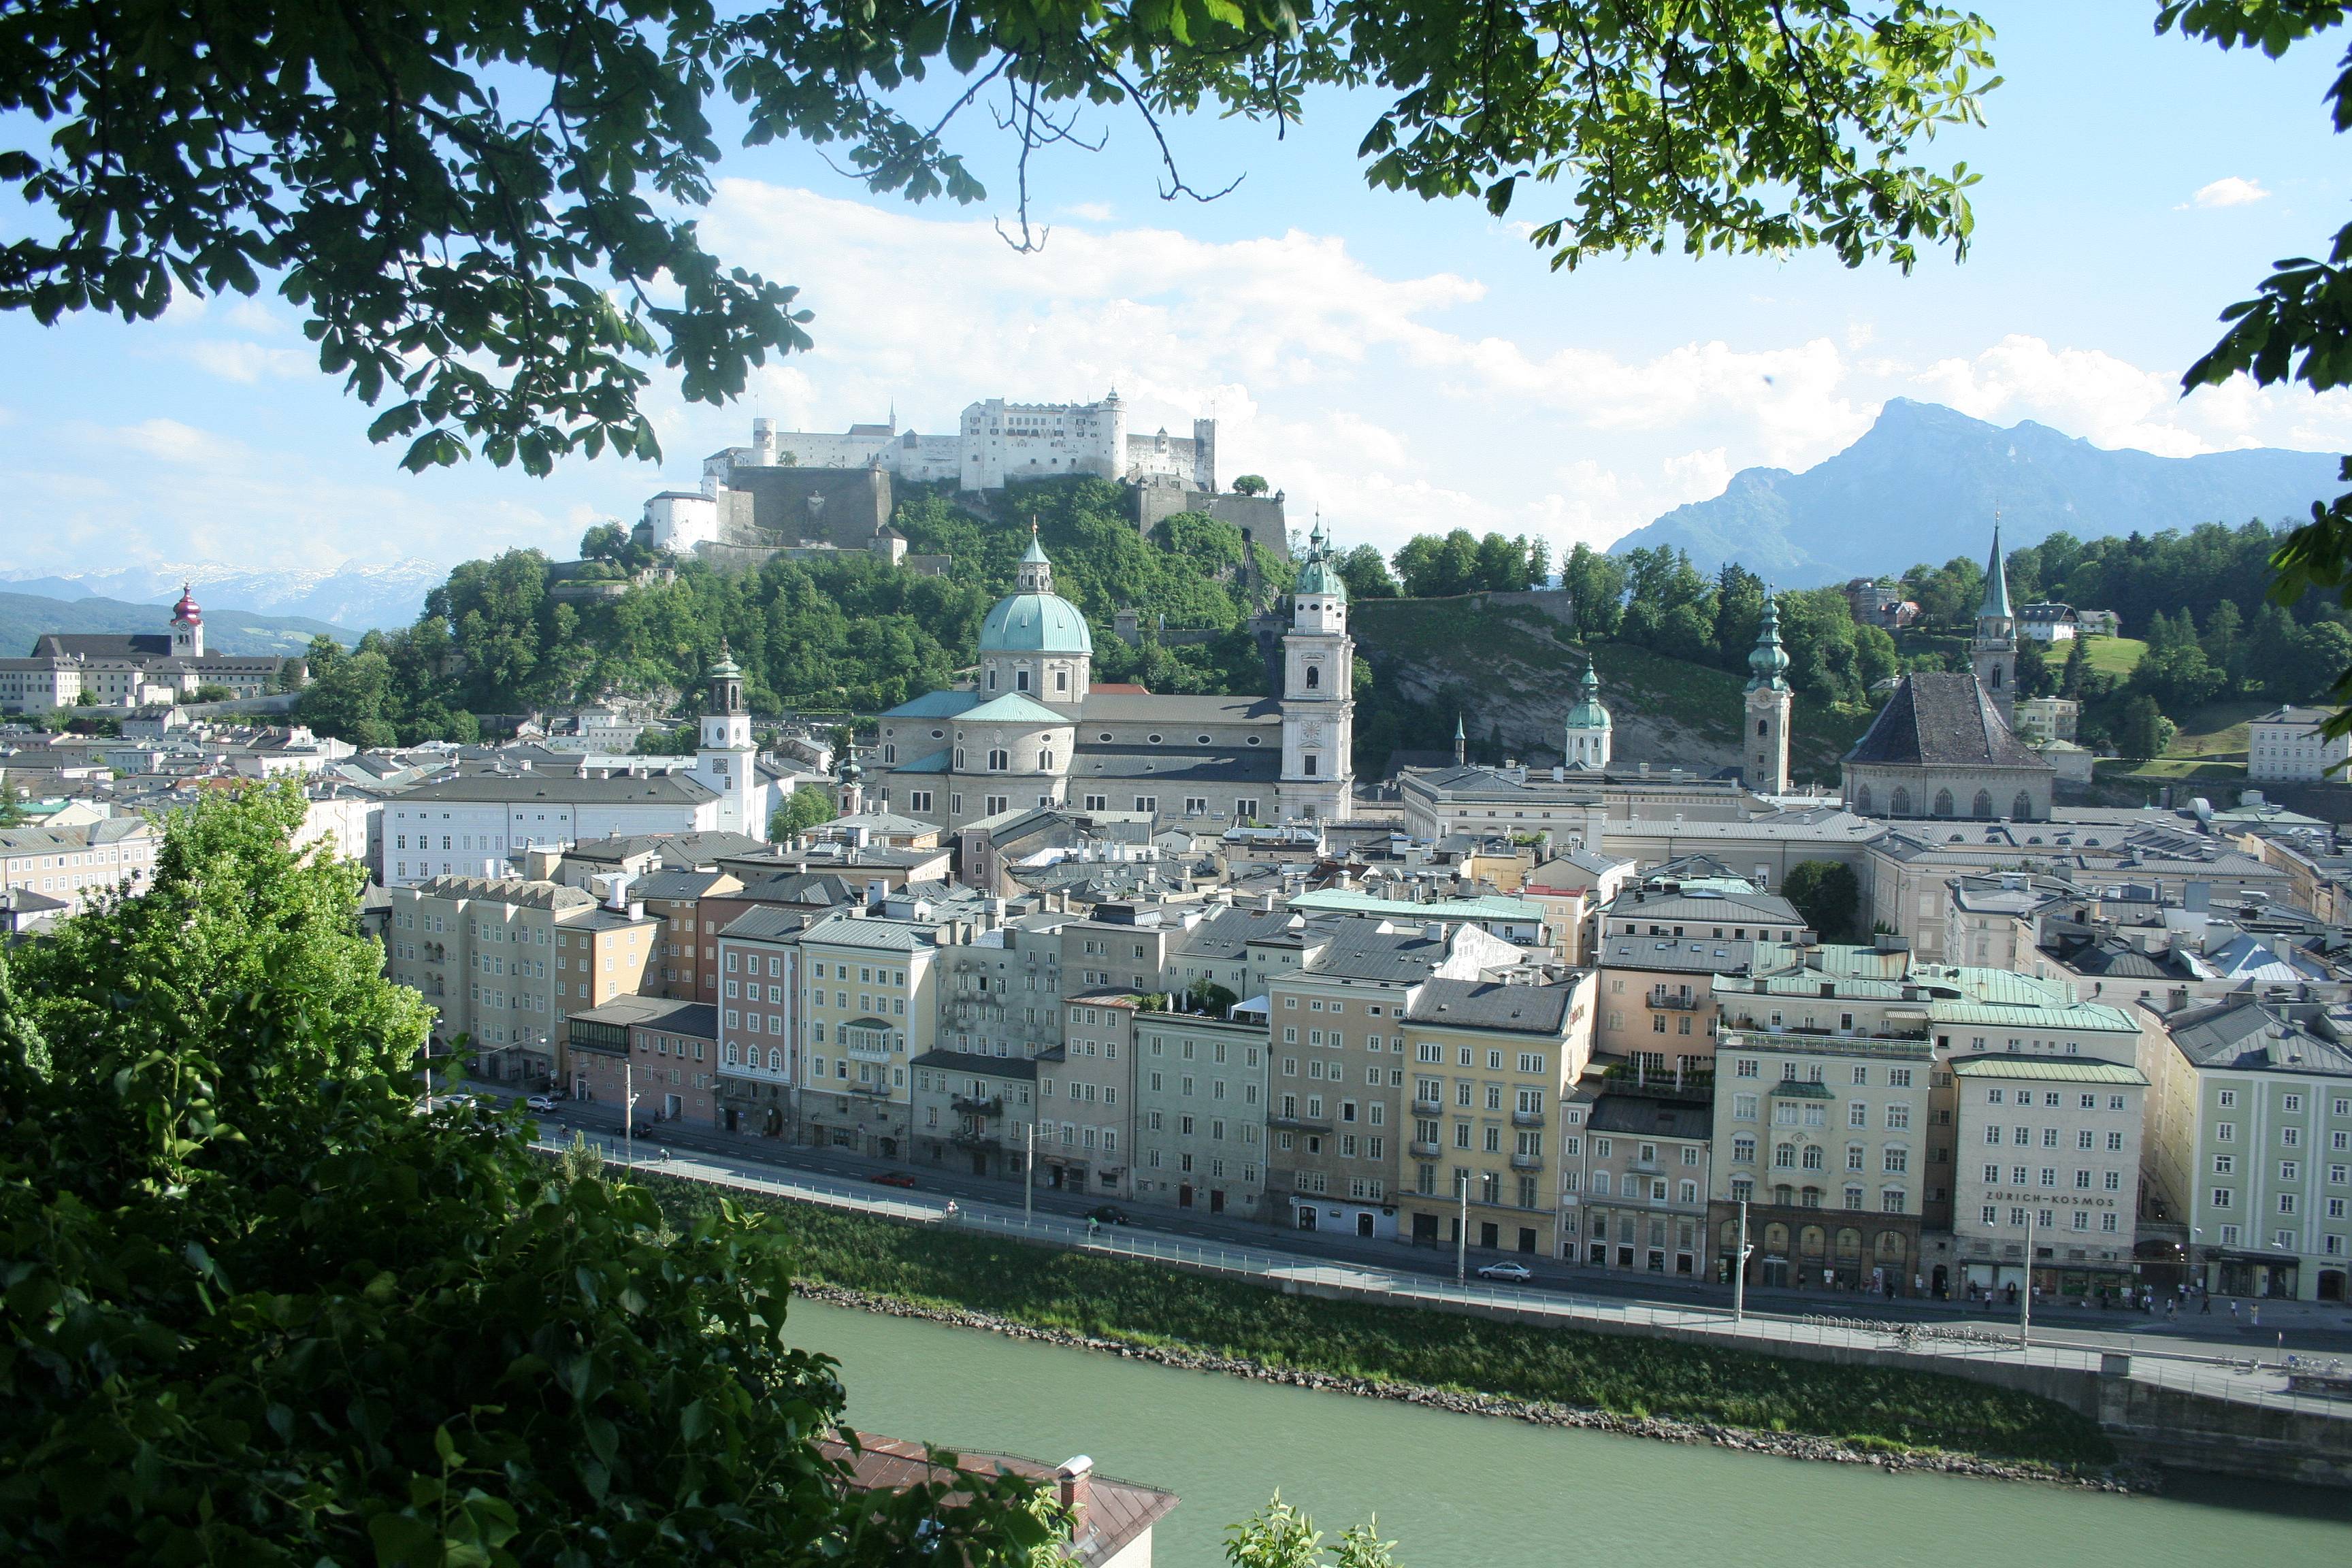 Herzlich willkommen in Salzburg